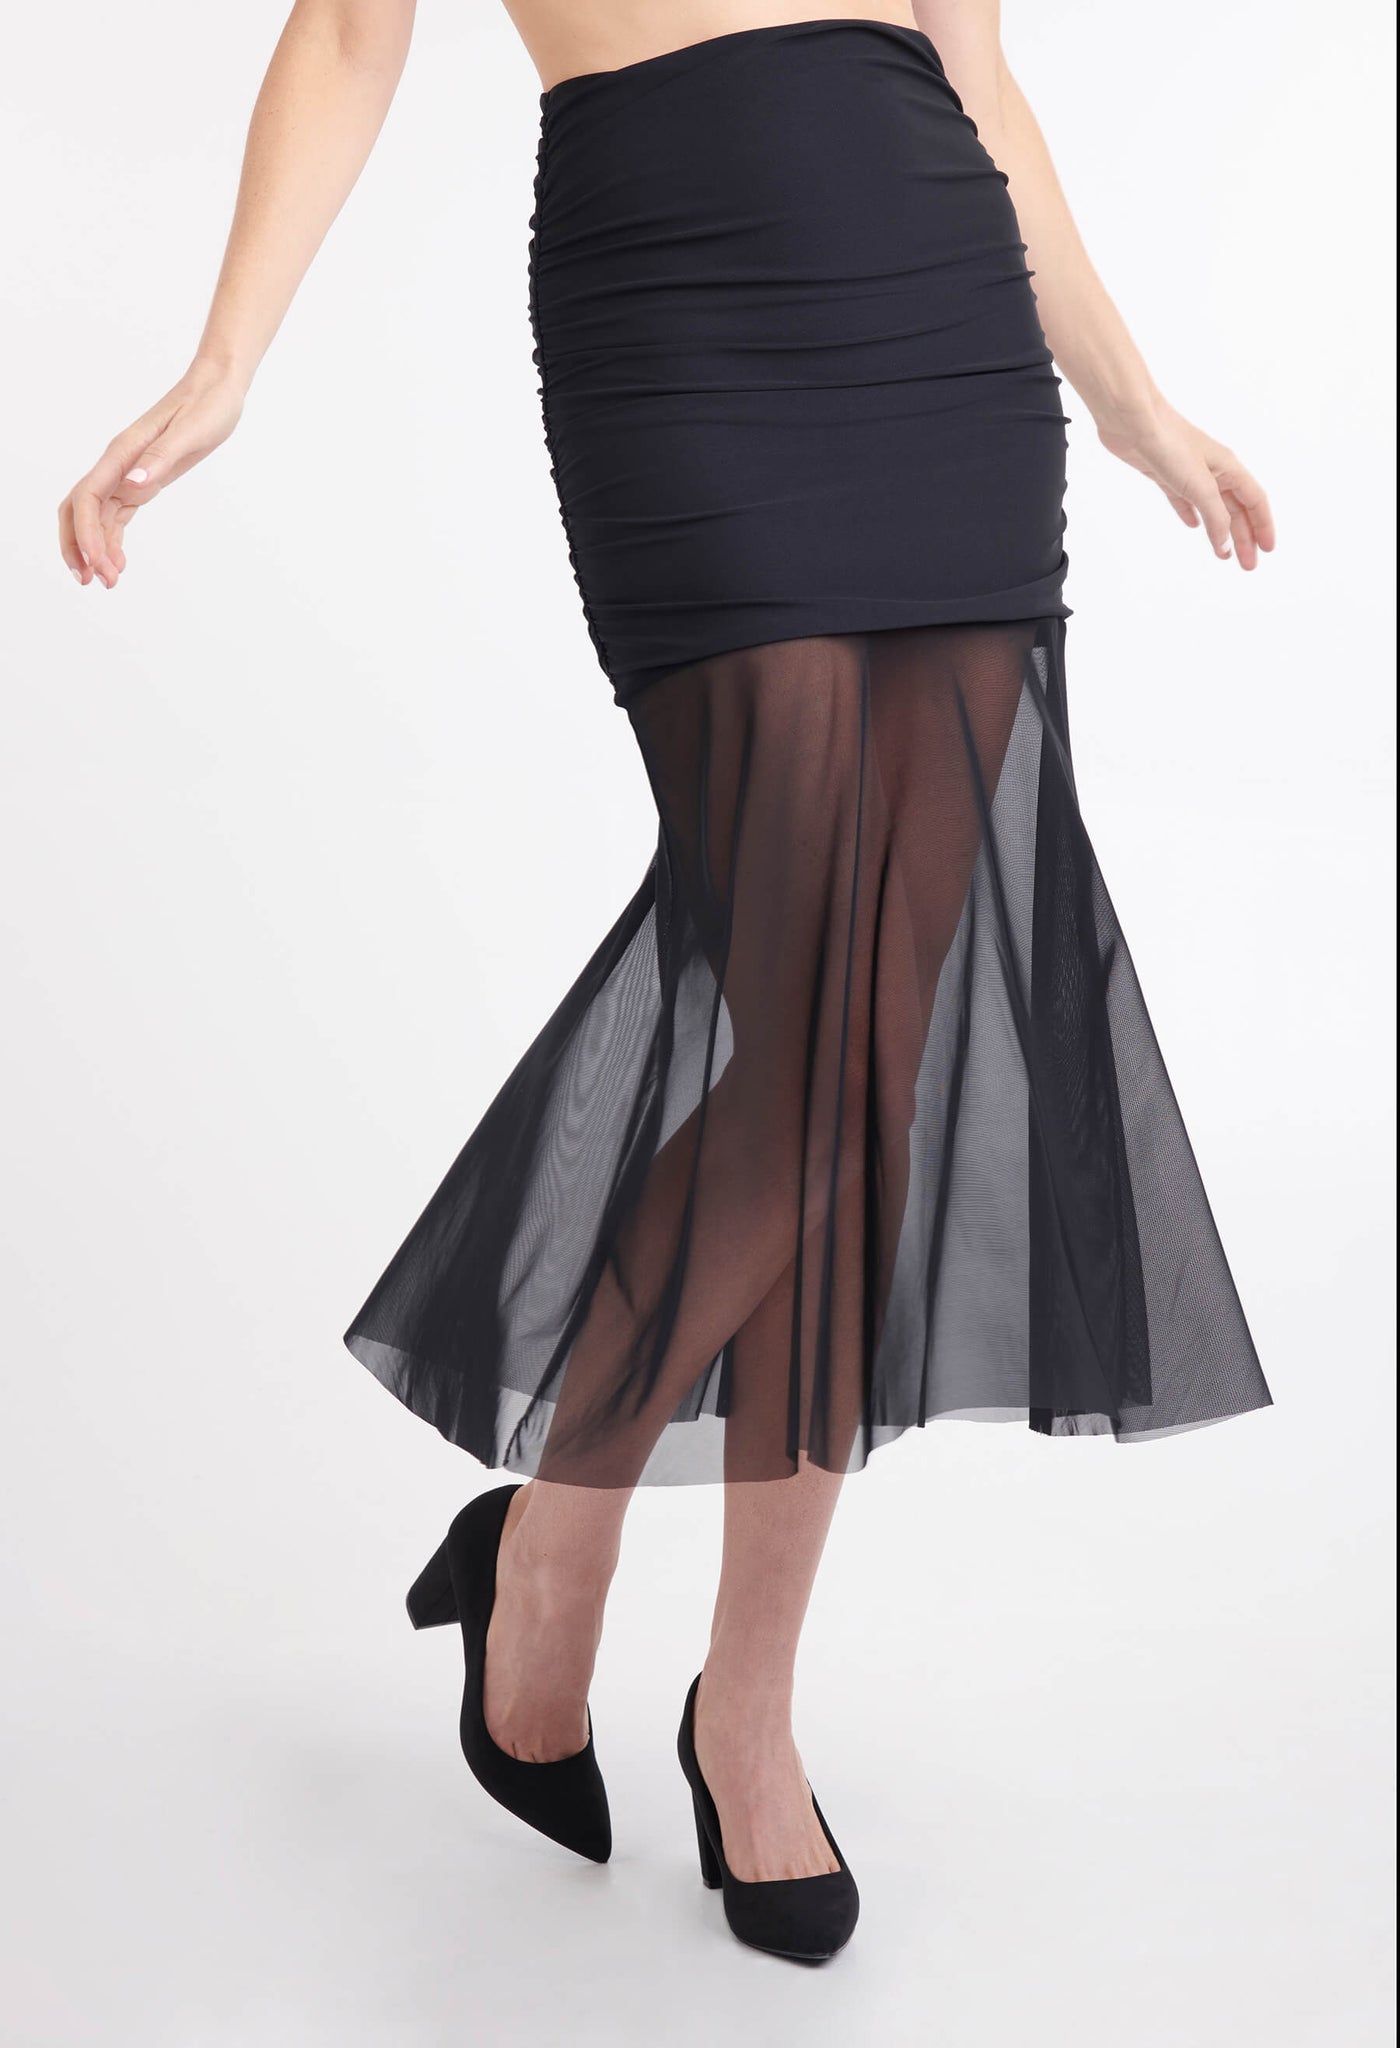 Jupe Éliane avec tissu imitation nylon noire, peut s'adapter en robe. Produit québécois fait par KSL!